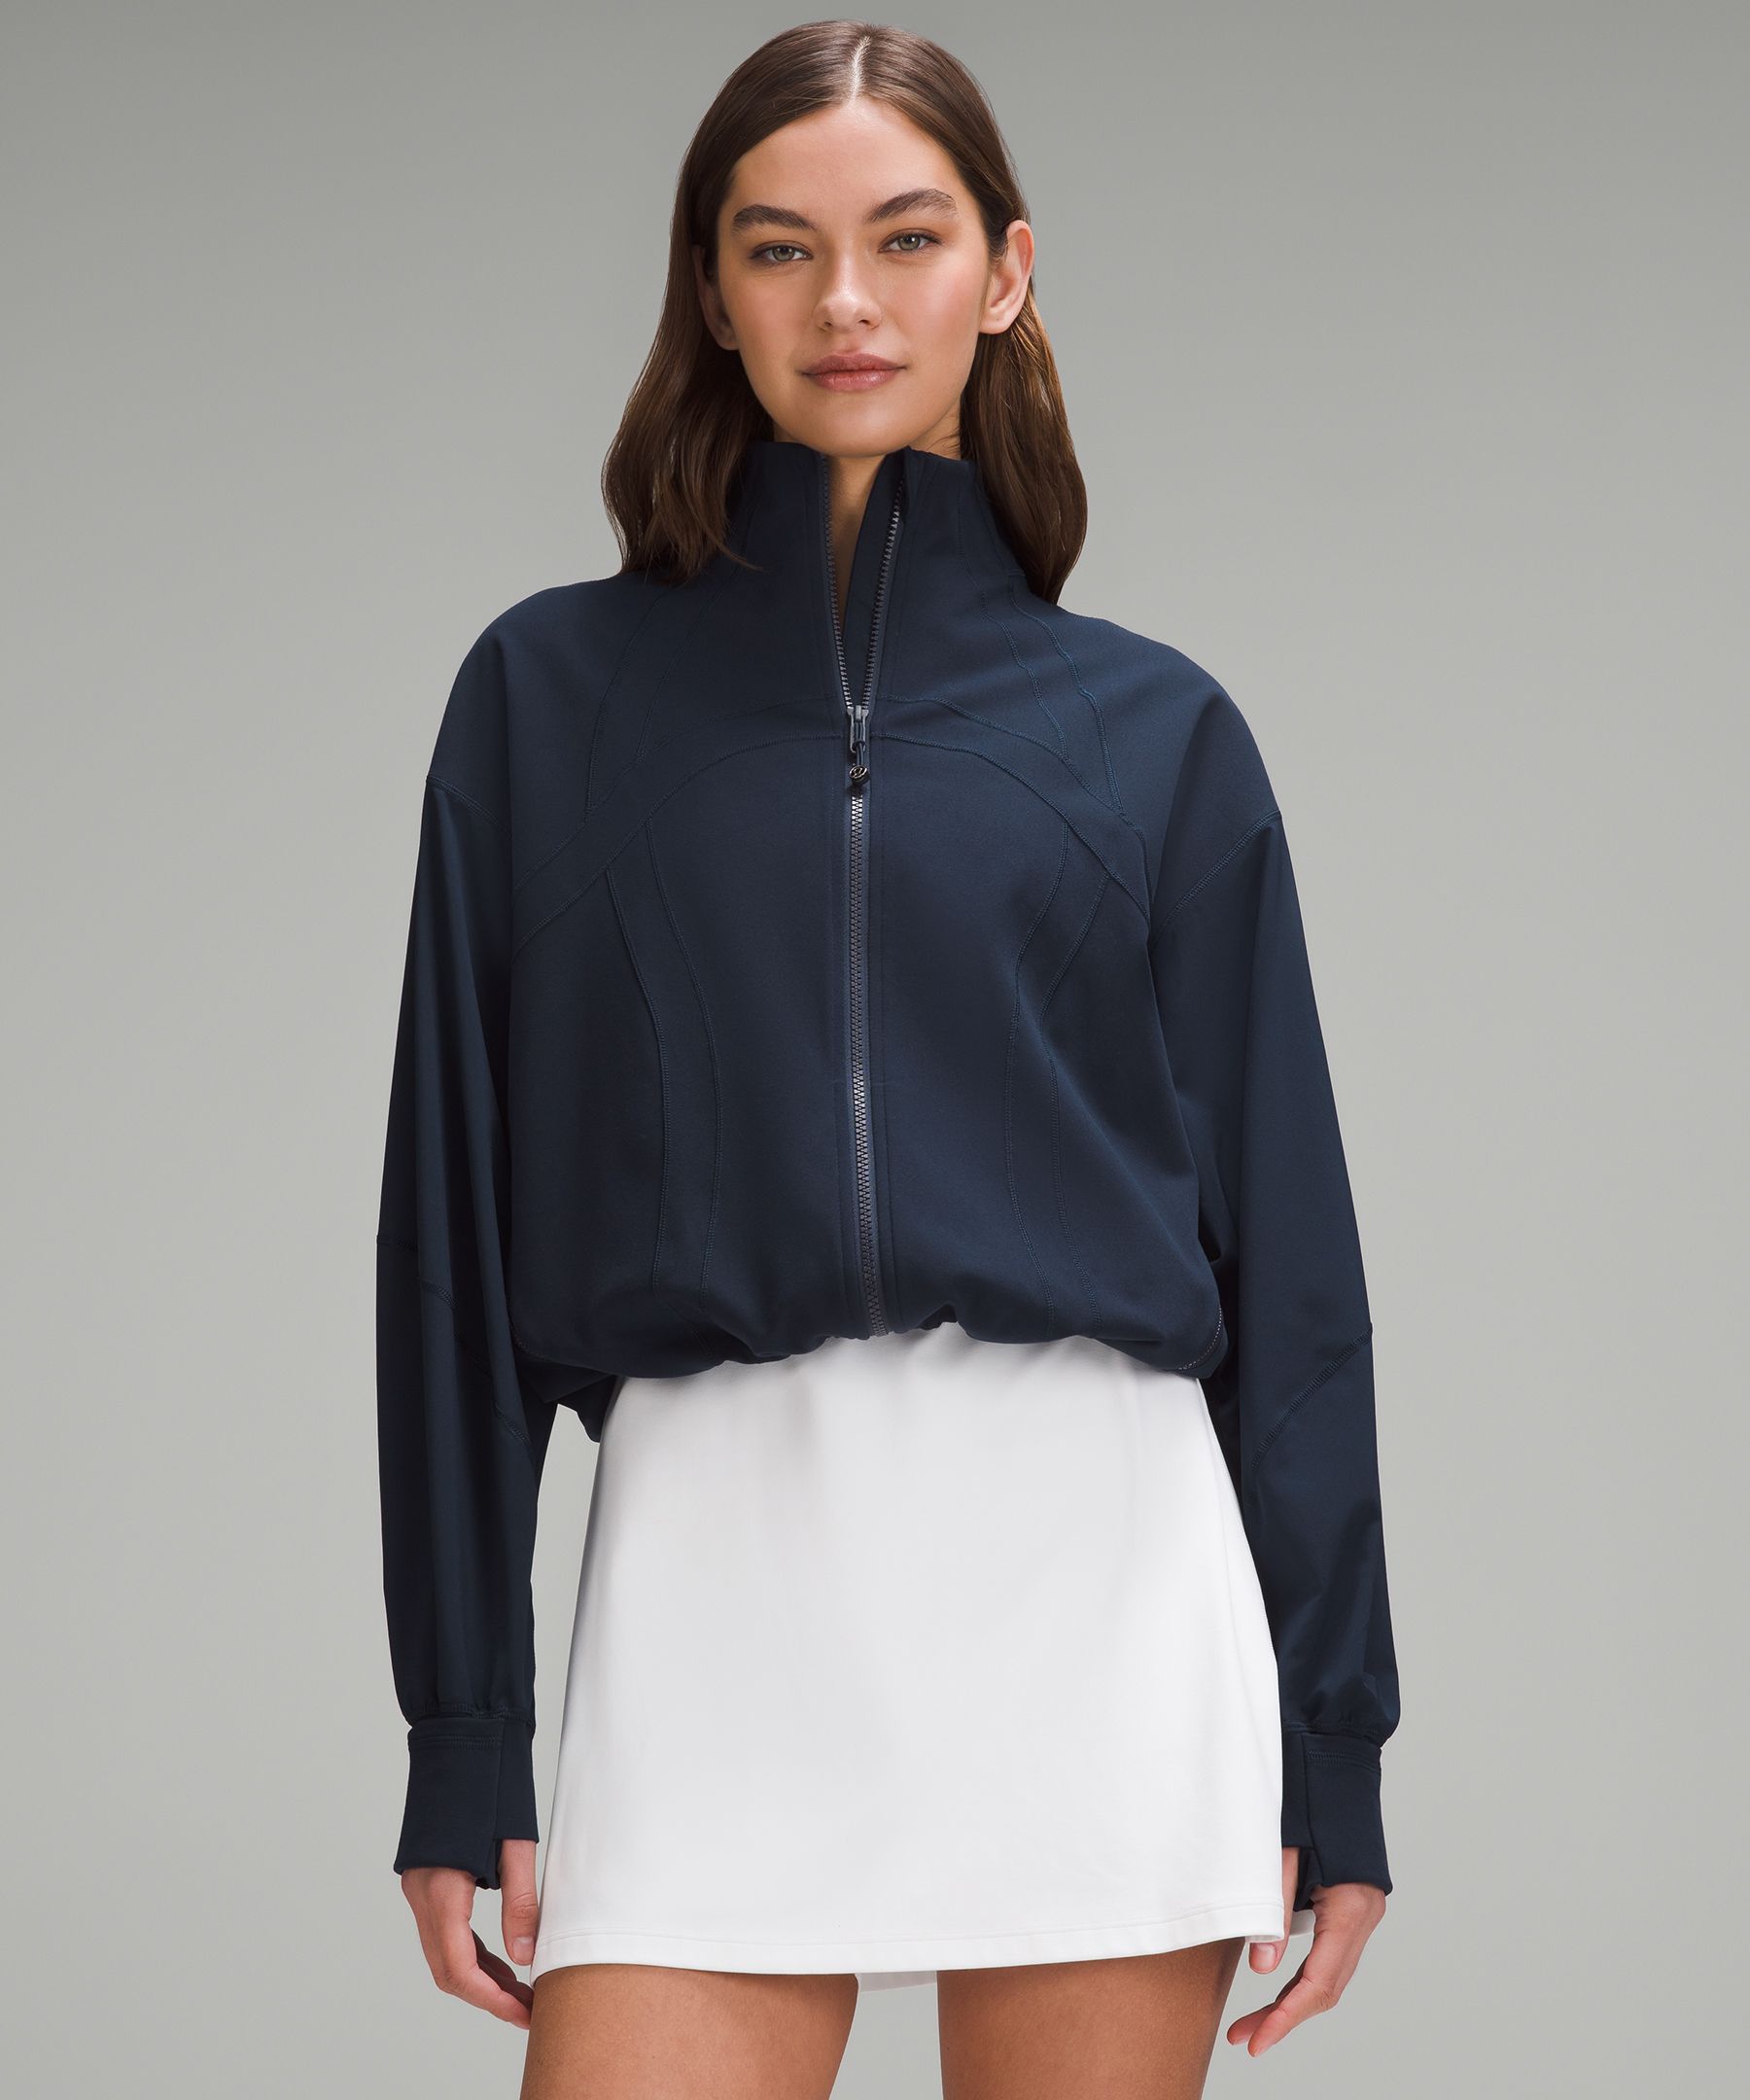 Define Relaxed-Fit Jacket *Luon, Women's Hoodies & Sweatshirts